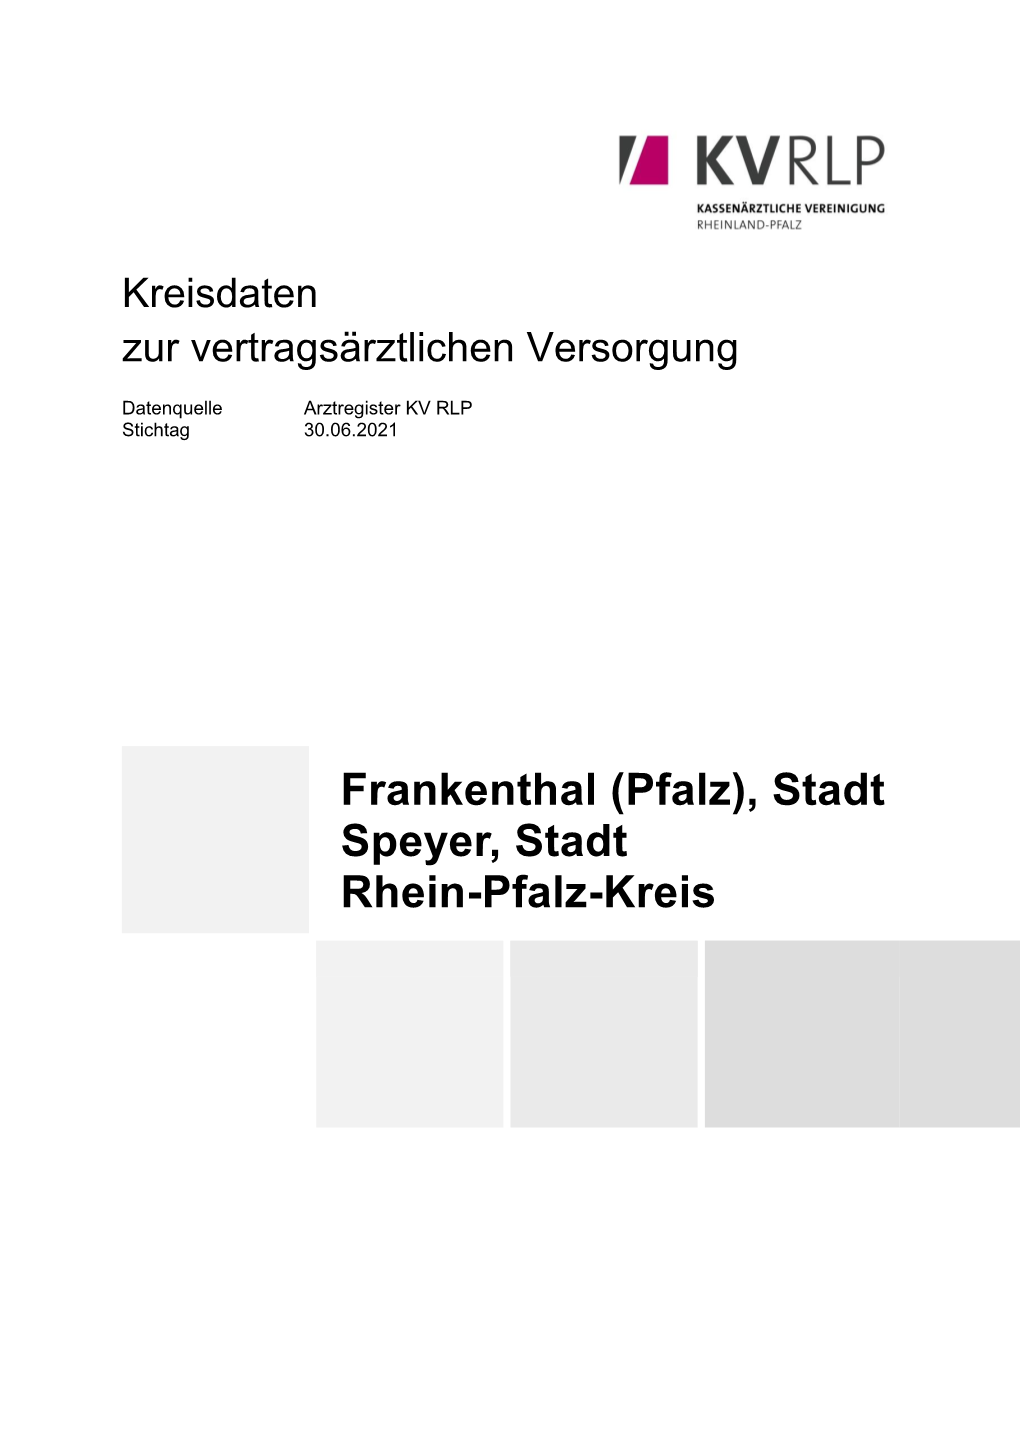 Kreisdaten Frankenthal, Speyer Und Rhein-Pfalz-Kreis